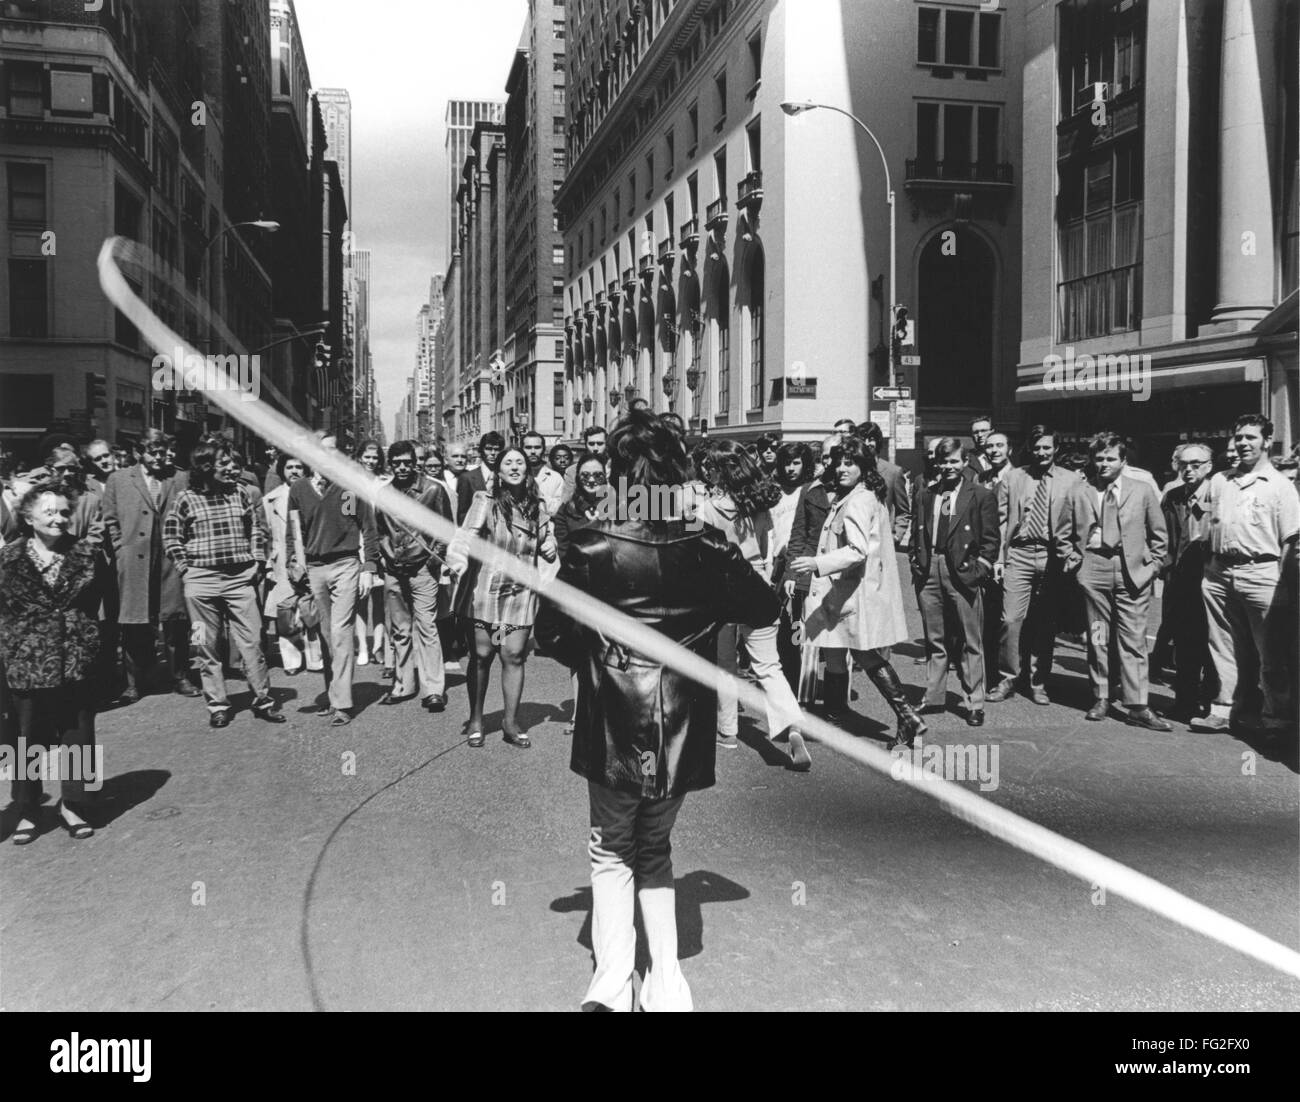 Premier jour de la terre, 1970. /NA femme corde saute sur Madison Avenue à New York le 22 avril 1970 pour célébrer le premier jour de la Terre. Plein crédit : Richard Busch / Granger, NYC -- Tous droits réservés. Banque D'Images